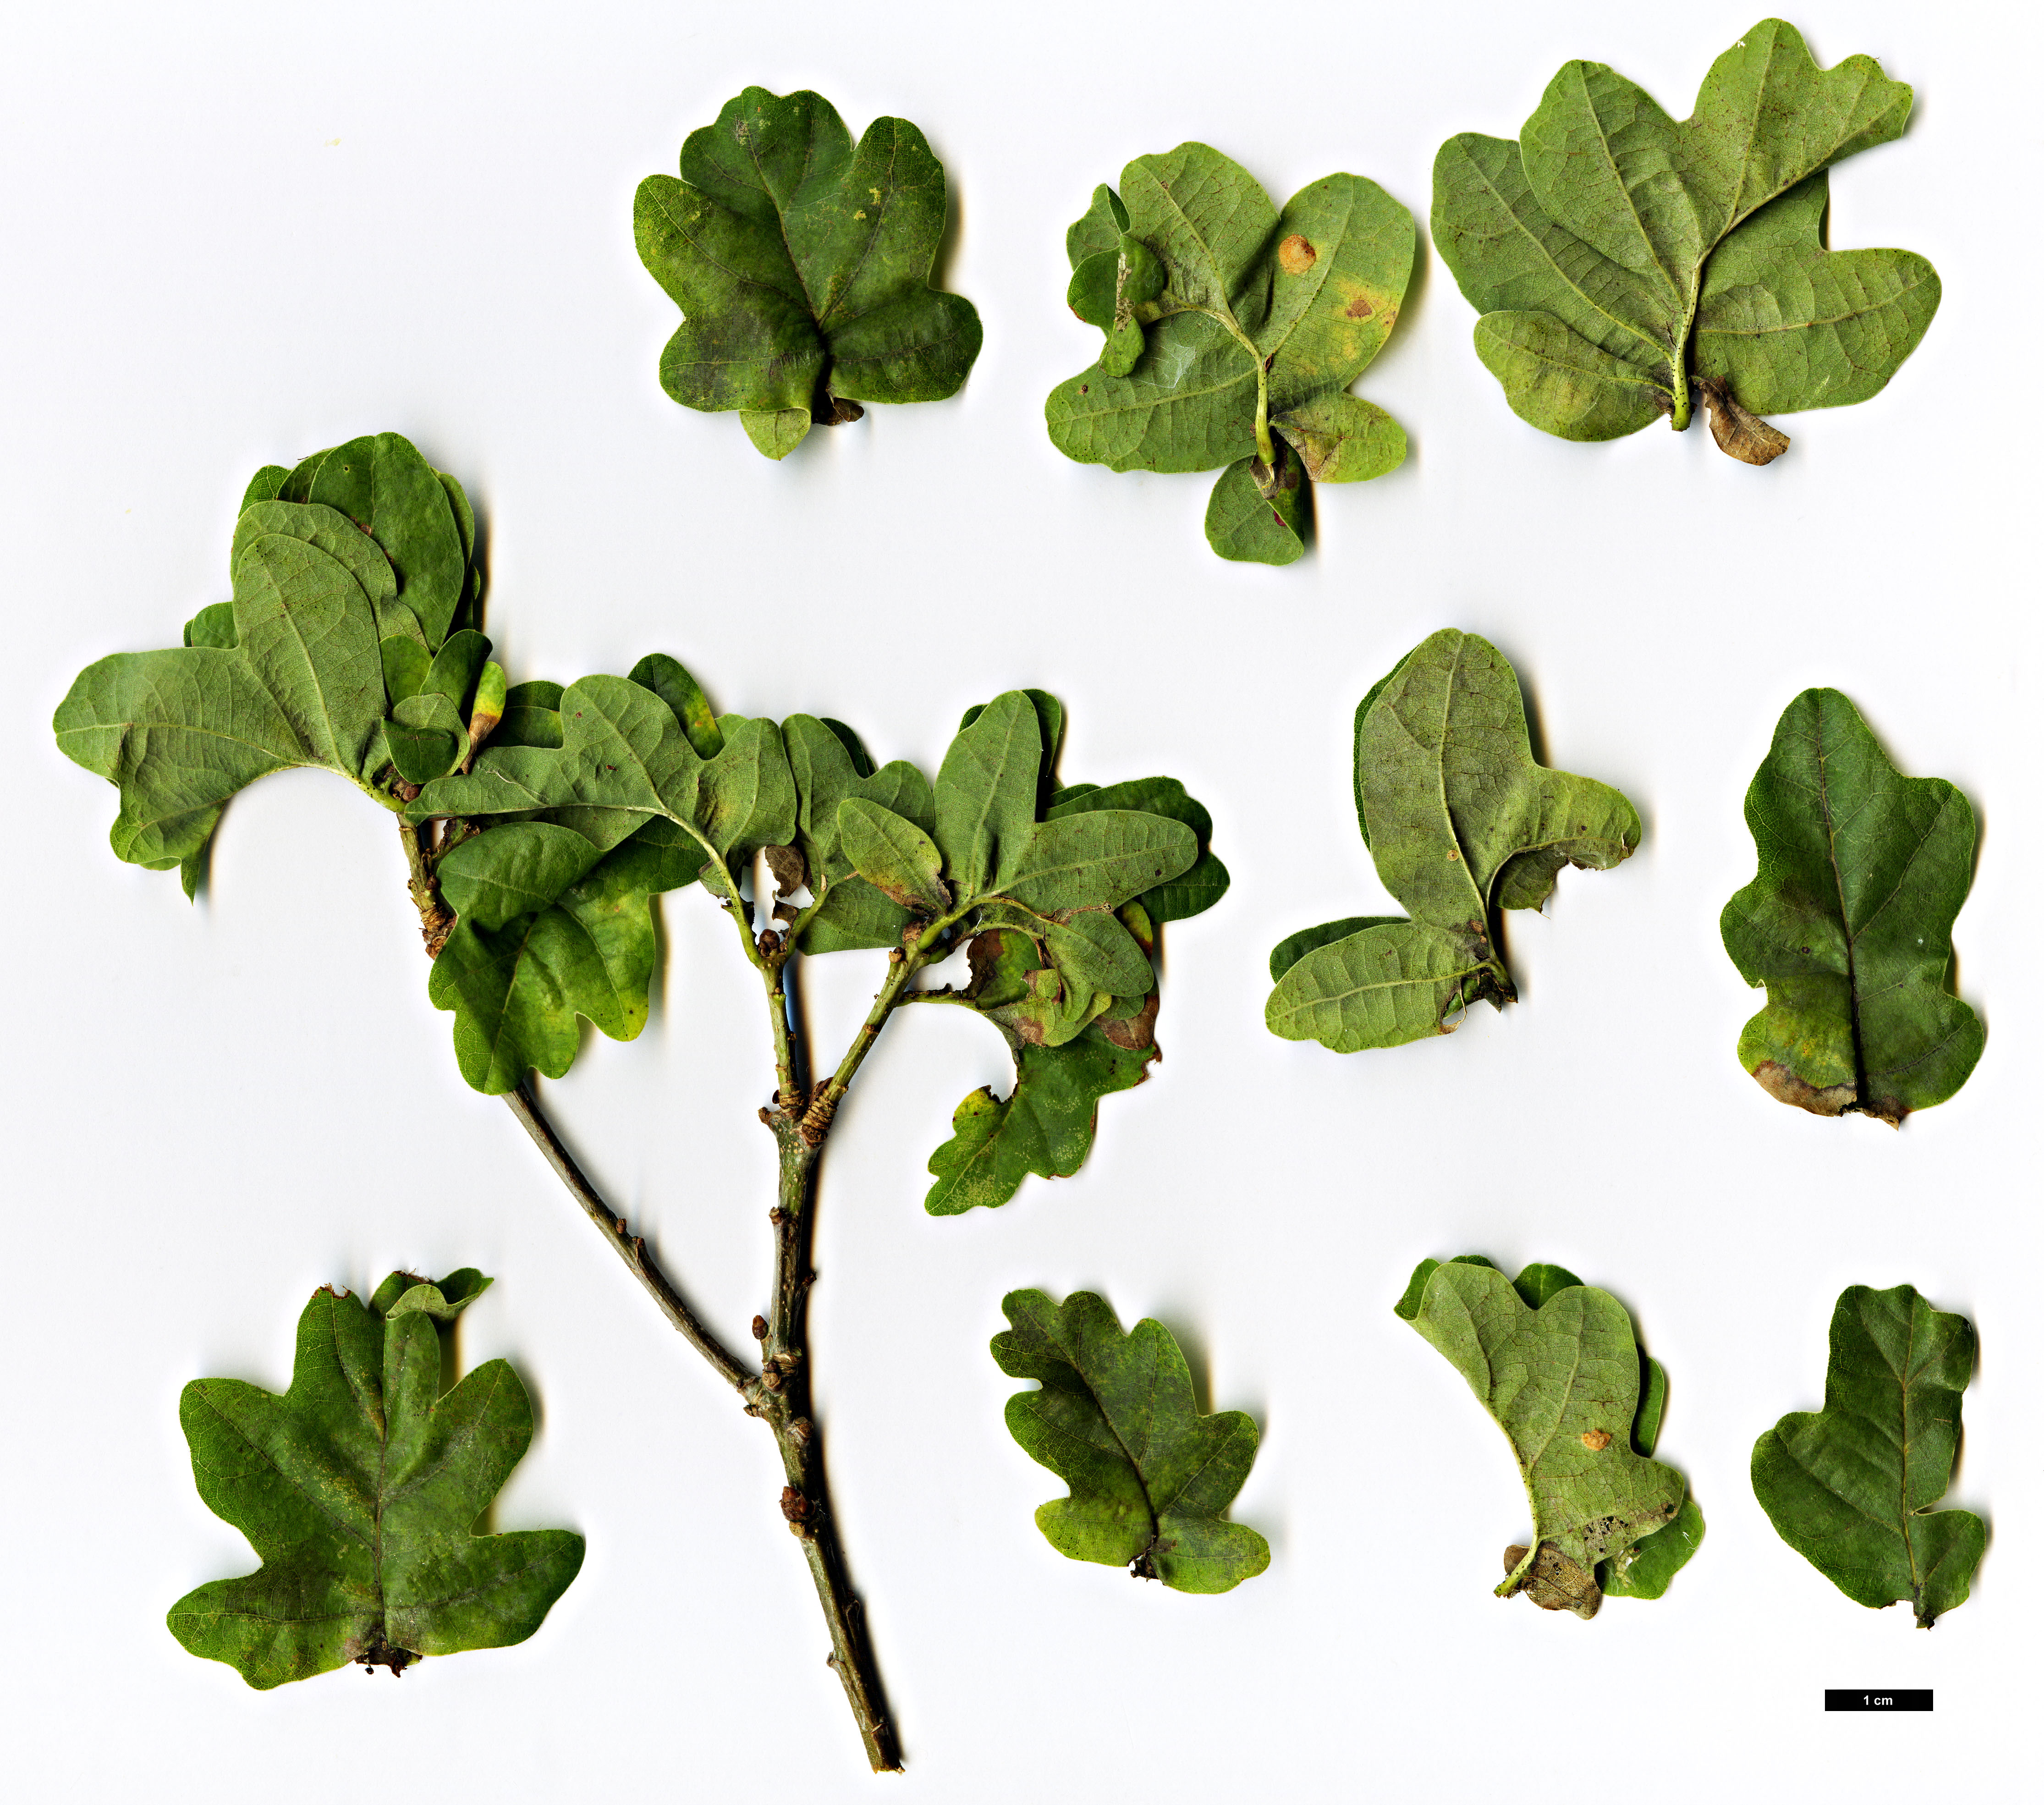 High resolution image: Family: Fagaceae - Genus: Quercus - Taxon: robur - SpeciesSub: Fastigiata Group 'Facrist'